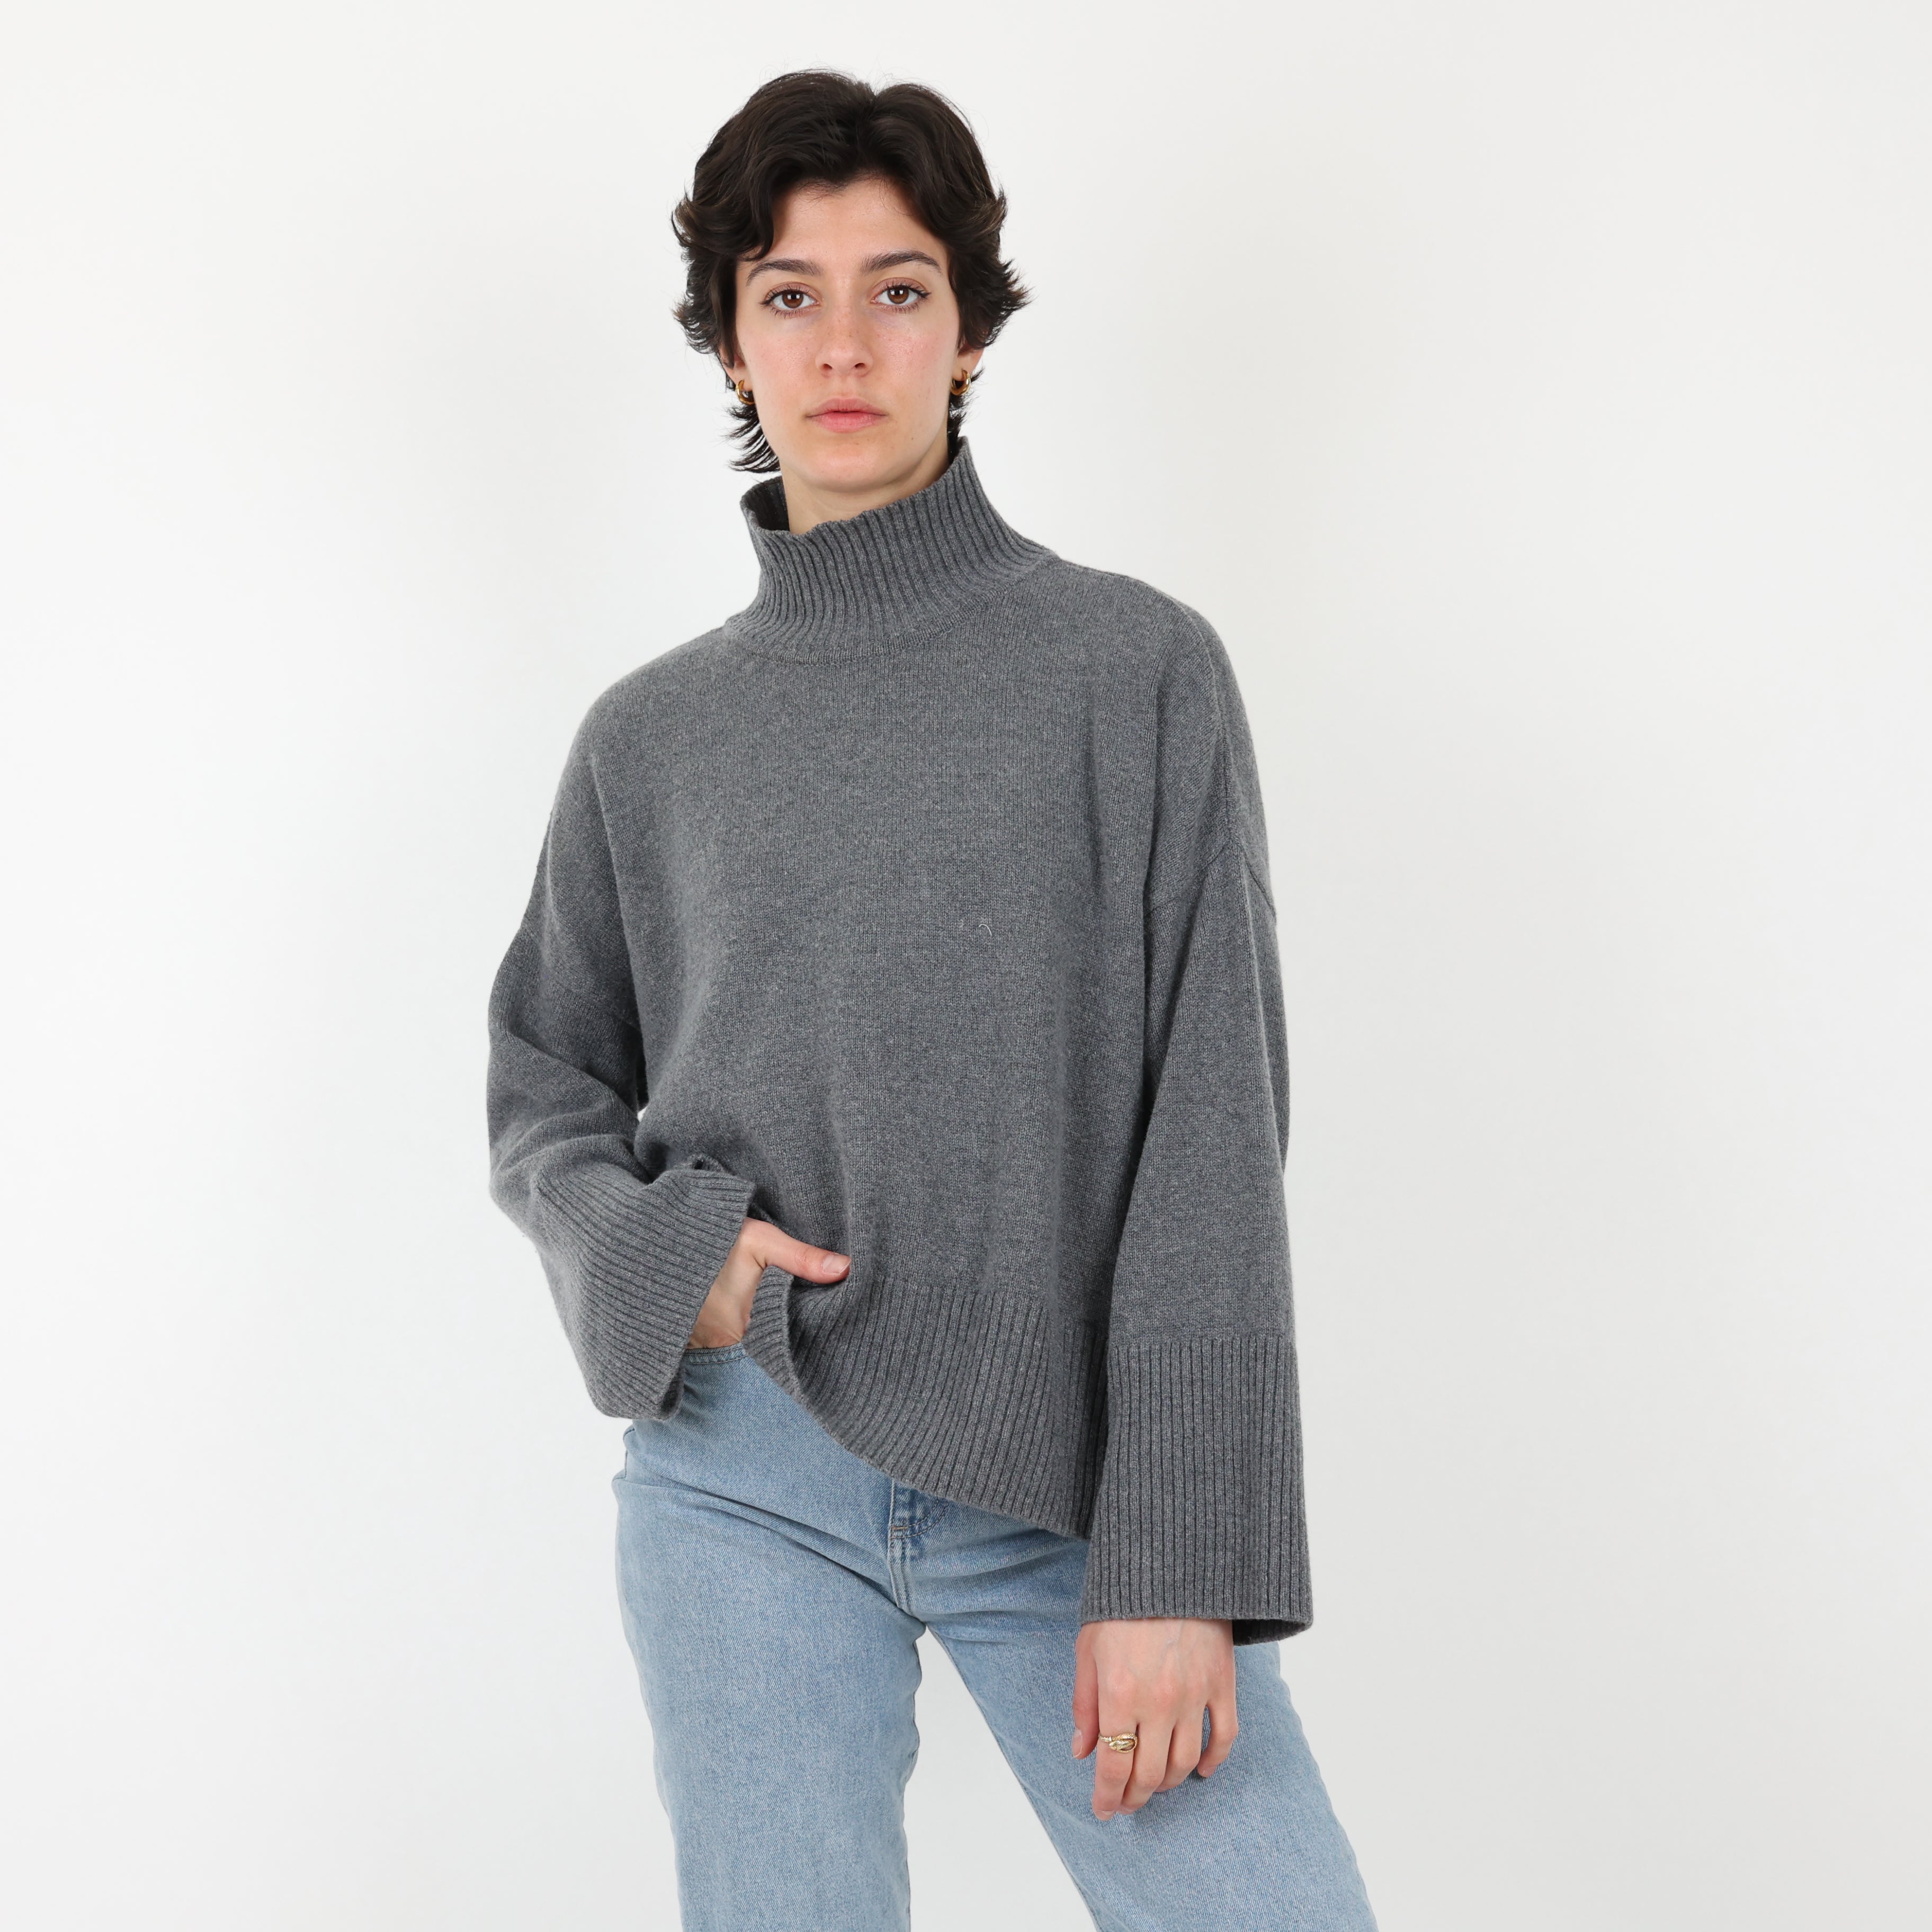 Sweatshirt, UK Size 10